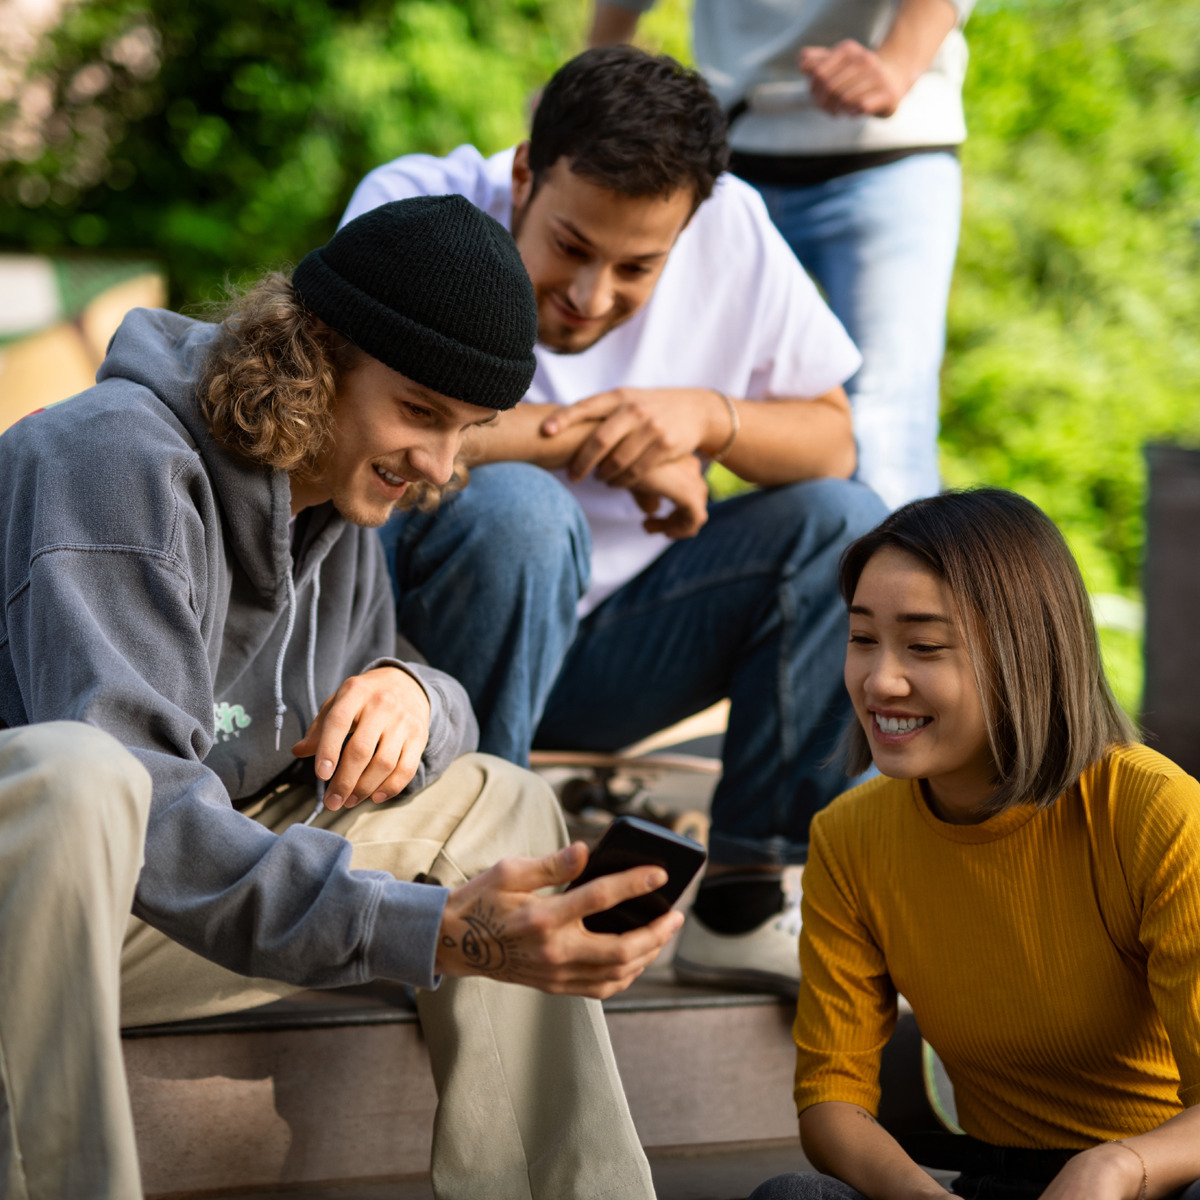 Jugendliche sitzen zusammen und schauen auf ein Handy-Display